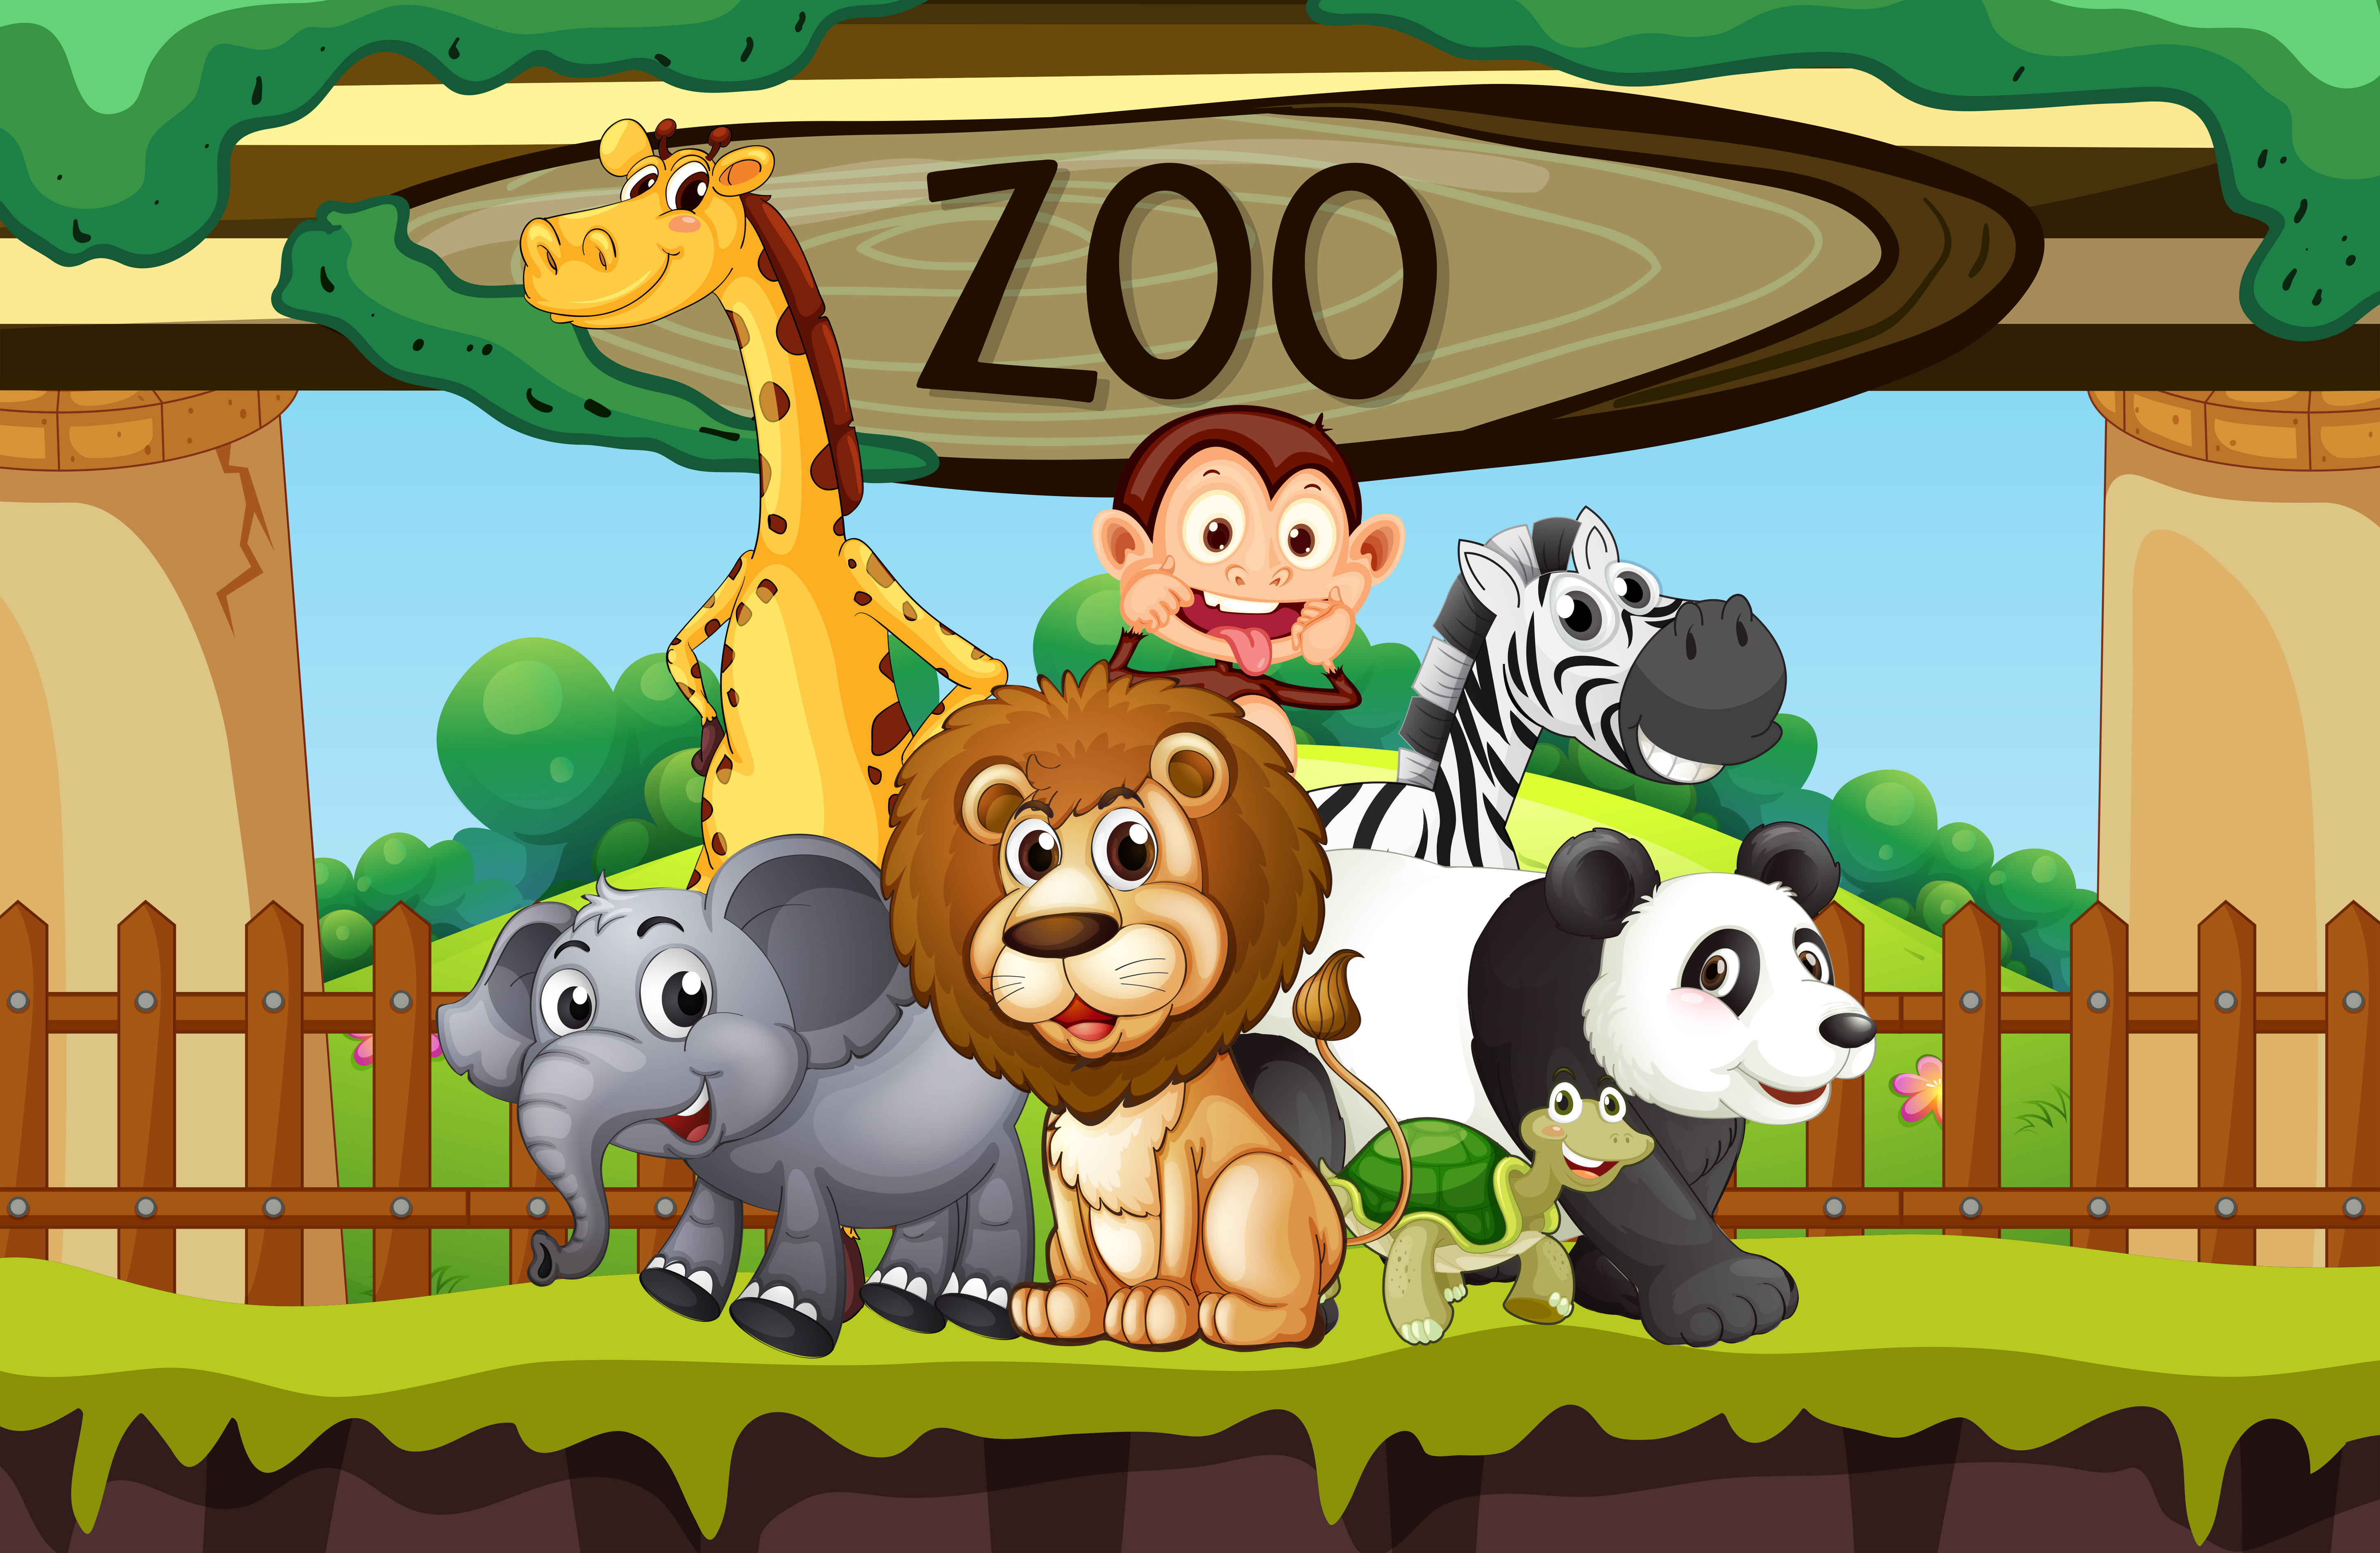 Kids box wild animals. Зоопарк мультяшный. Zoo для детей. Животные зоопарка мультяшные. Зоопарк для детей мультяшный.